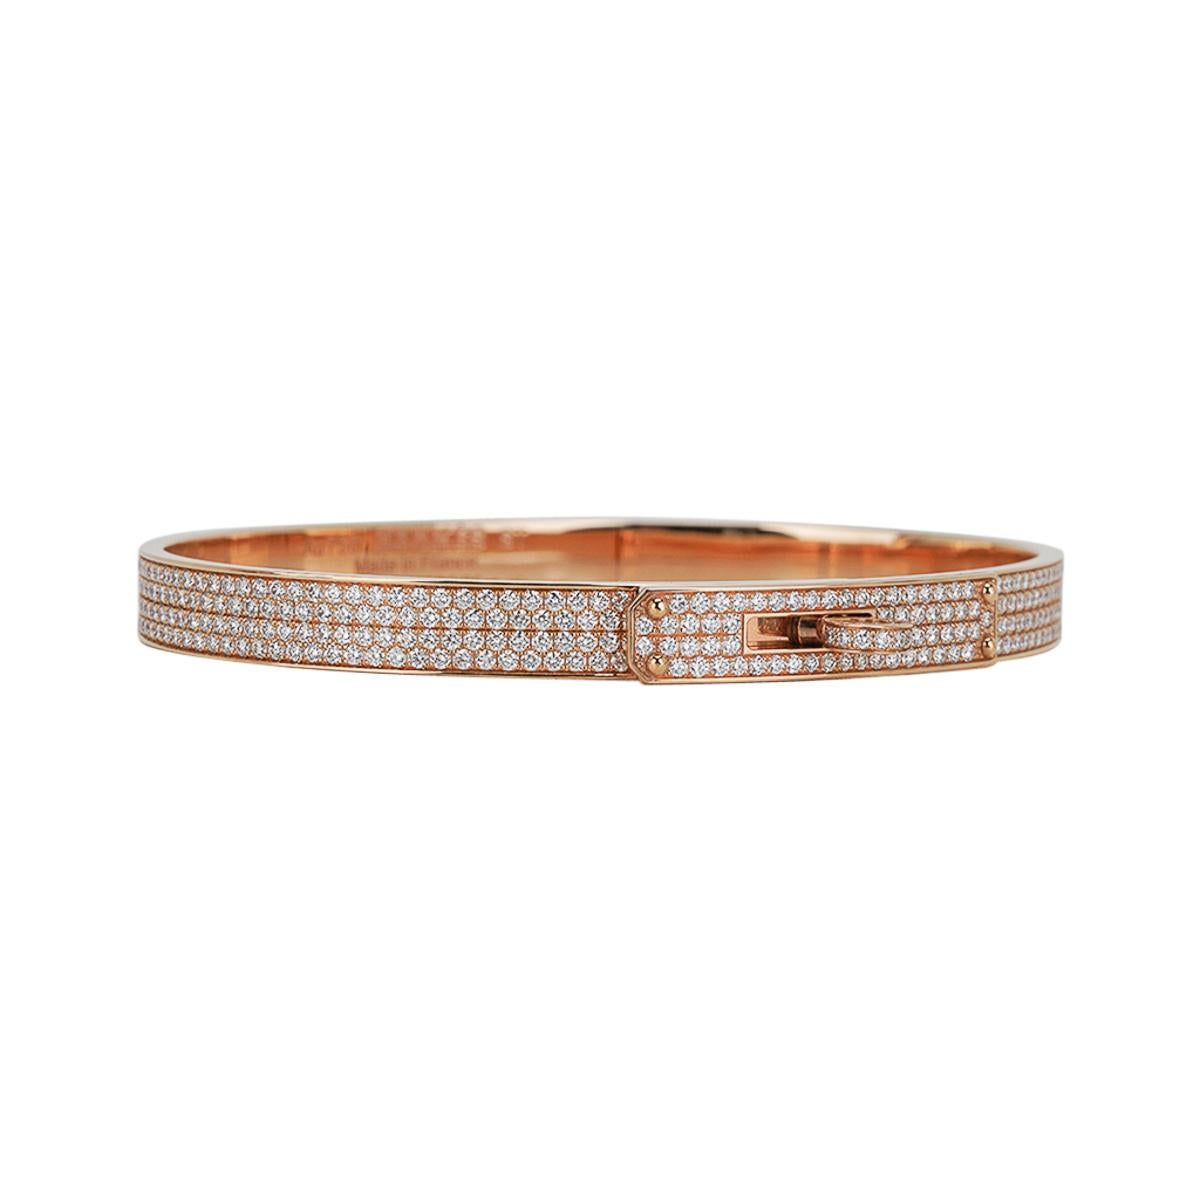 Mightychic bietet ein Hermes Kelly Bracelet Small Model, besetzt mit 539 Diamanten.
Dieses schicke und sofort erkennbare Armband aus 18 Karat Gelbgold mit Diamanten ist voll besetzt.
ist sehr schwer zu beschaffen. 
Das Karatgewicht der Diamanten